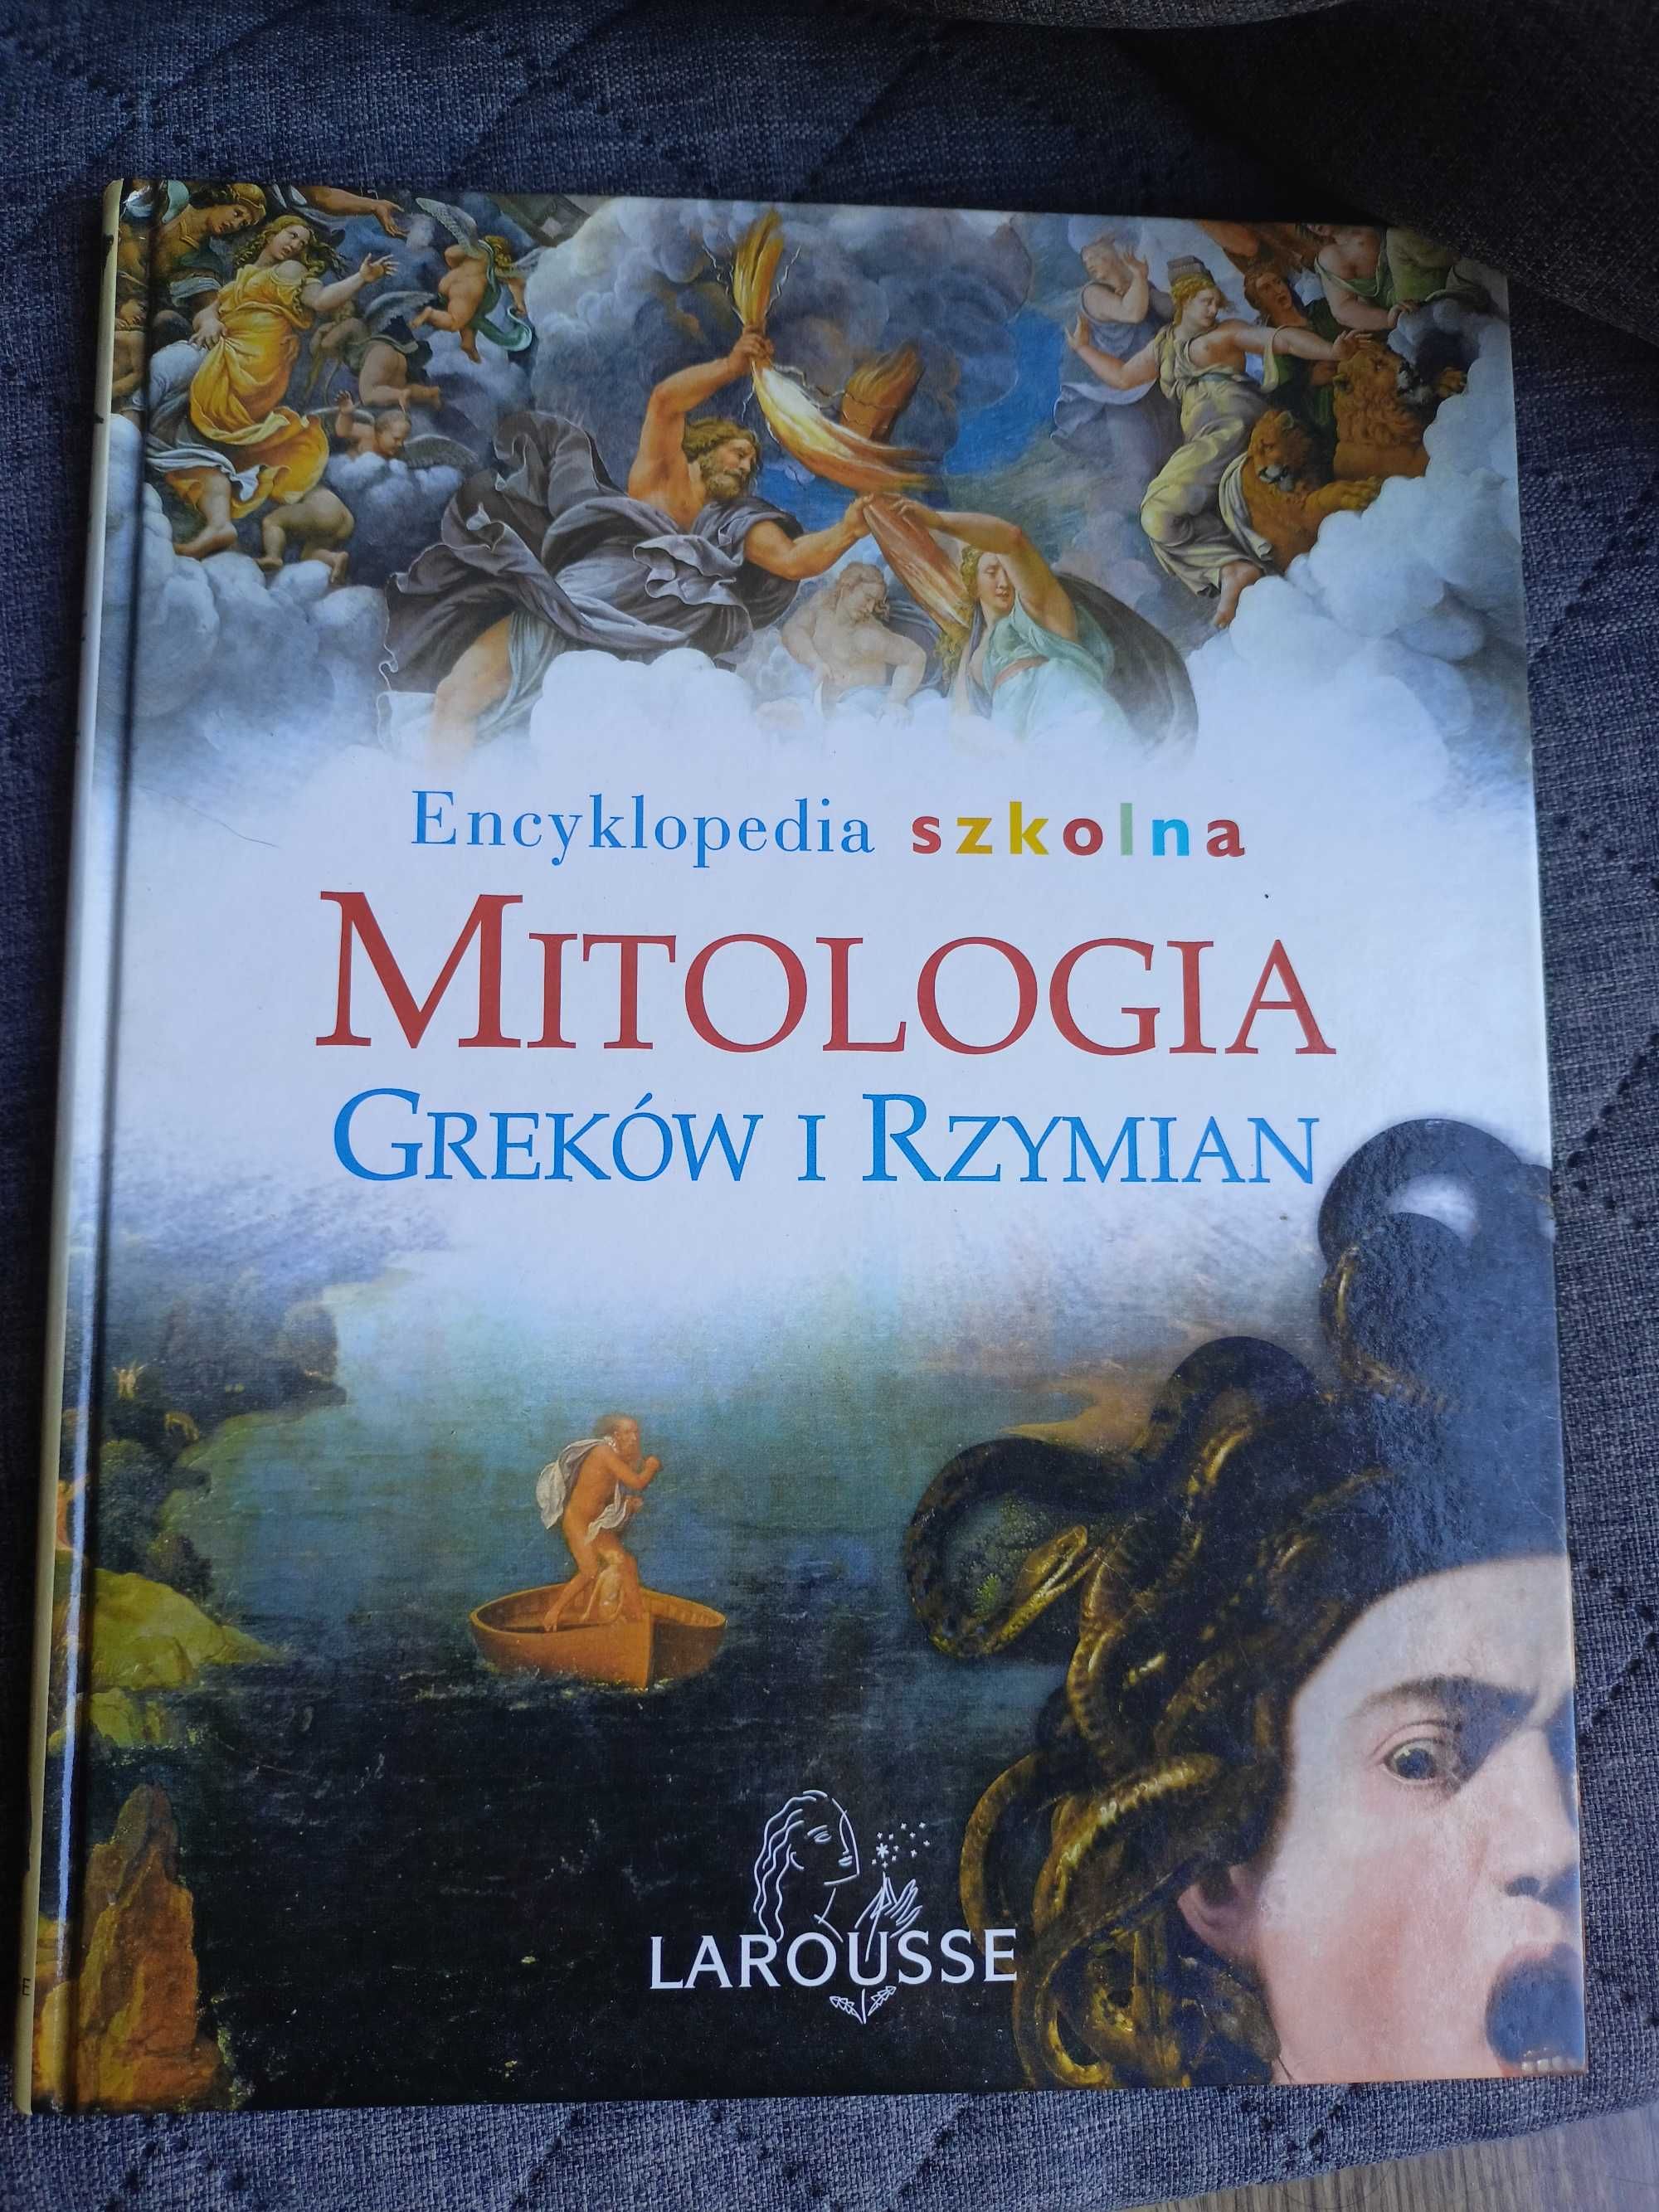 Mitologia Greków i Rzymian  Encyklopedia szkolna Larousse